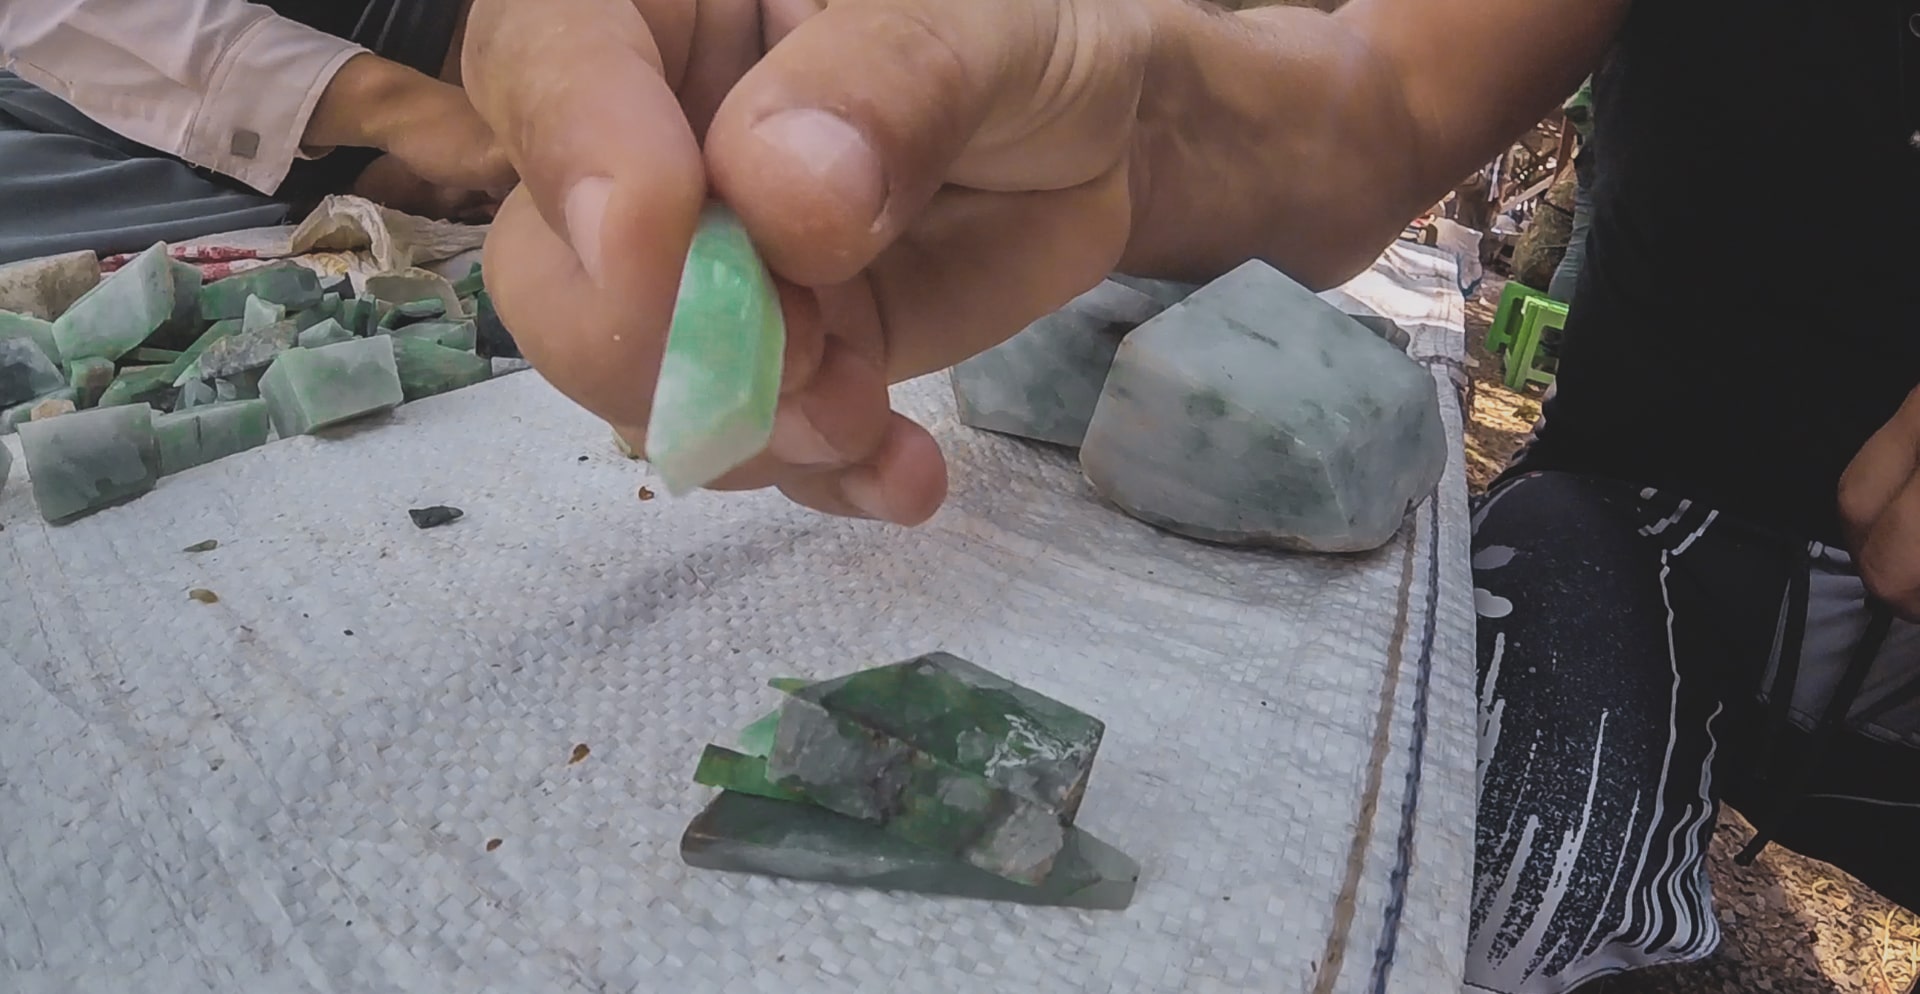 morceau de jade brut dans les mains d'un homme